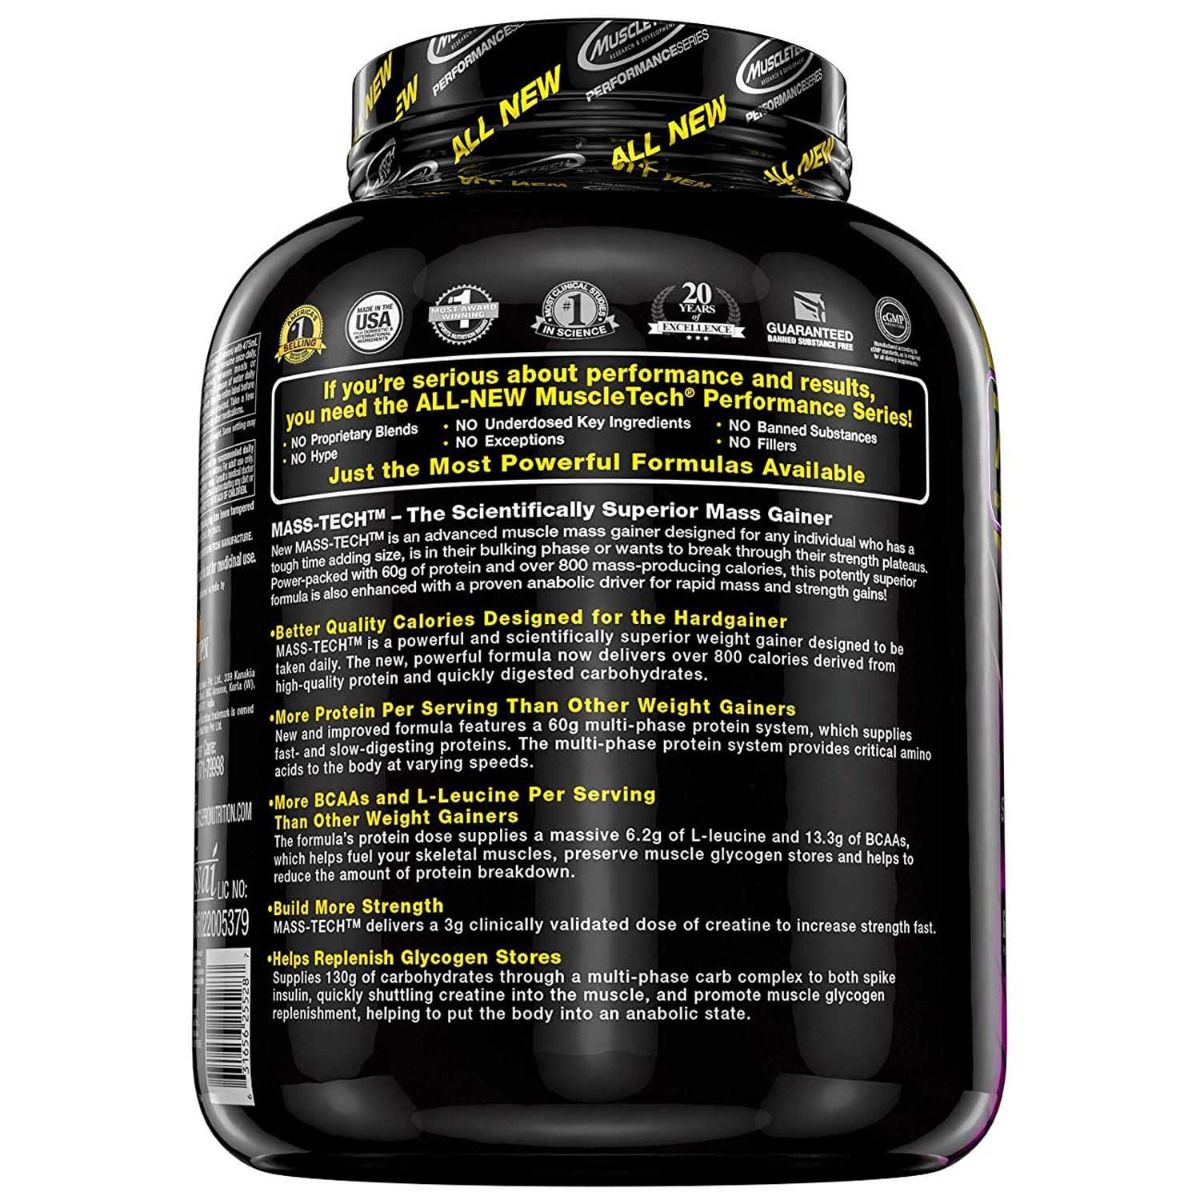 Muscletech Performance Series Mass Tech Vanilla Flavour Powder, 7 lb, Pack of 1 